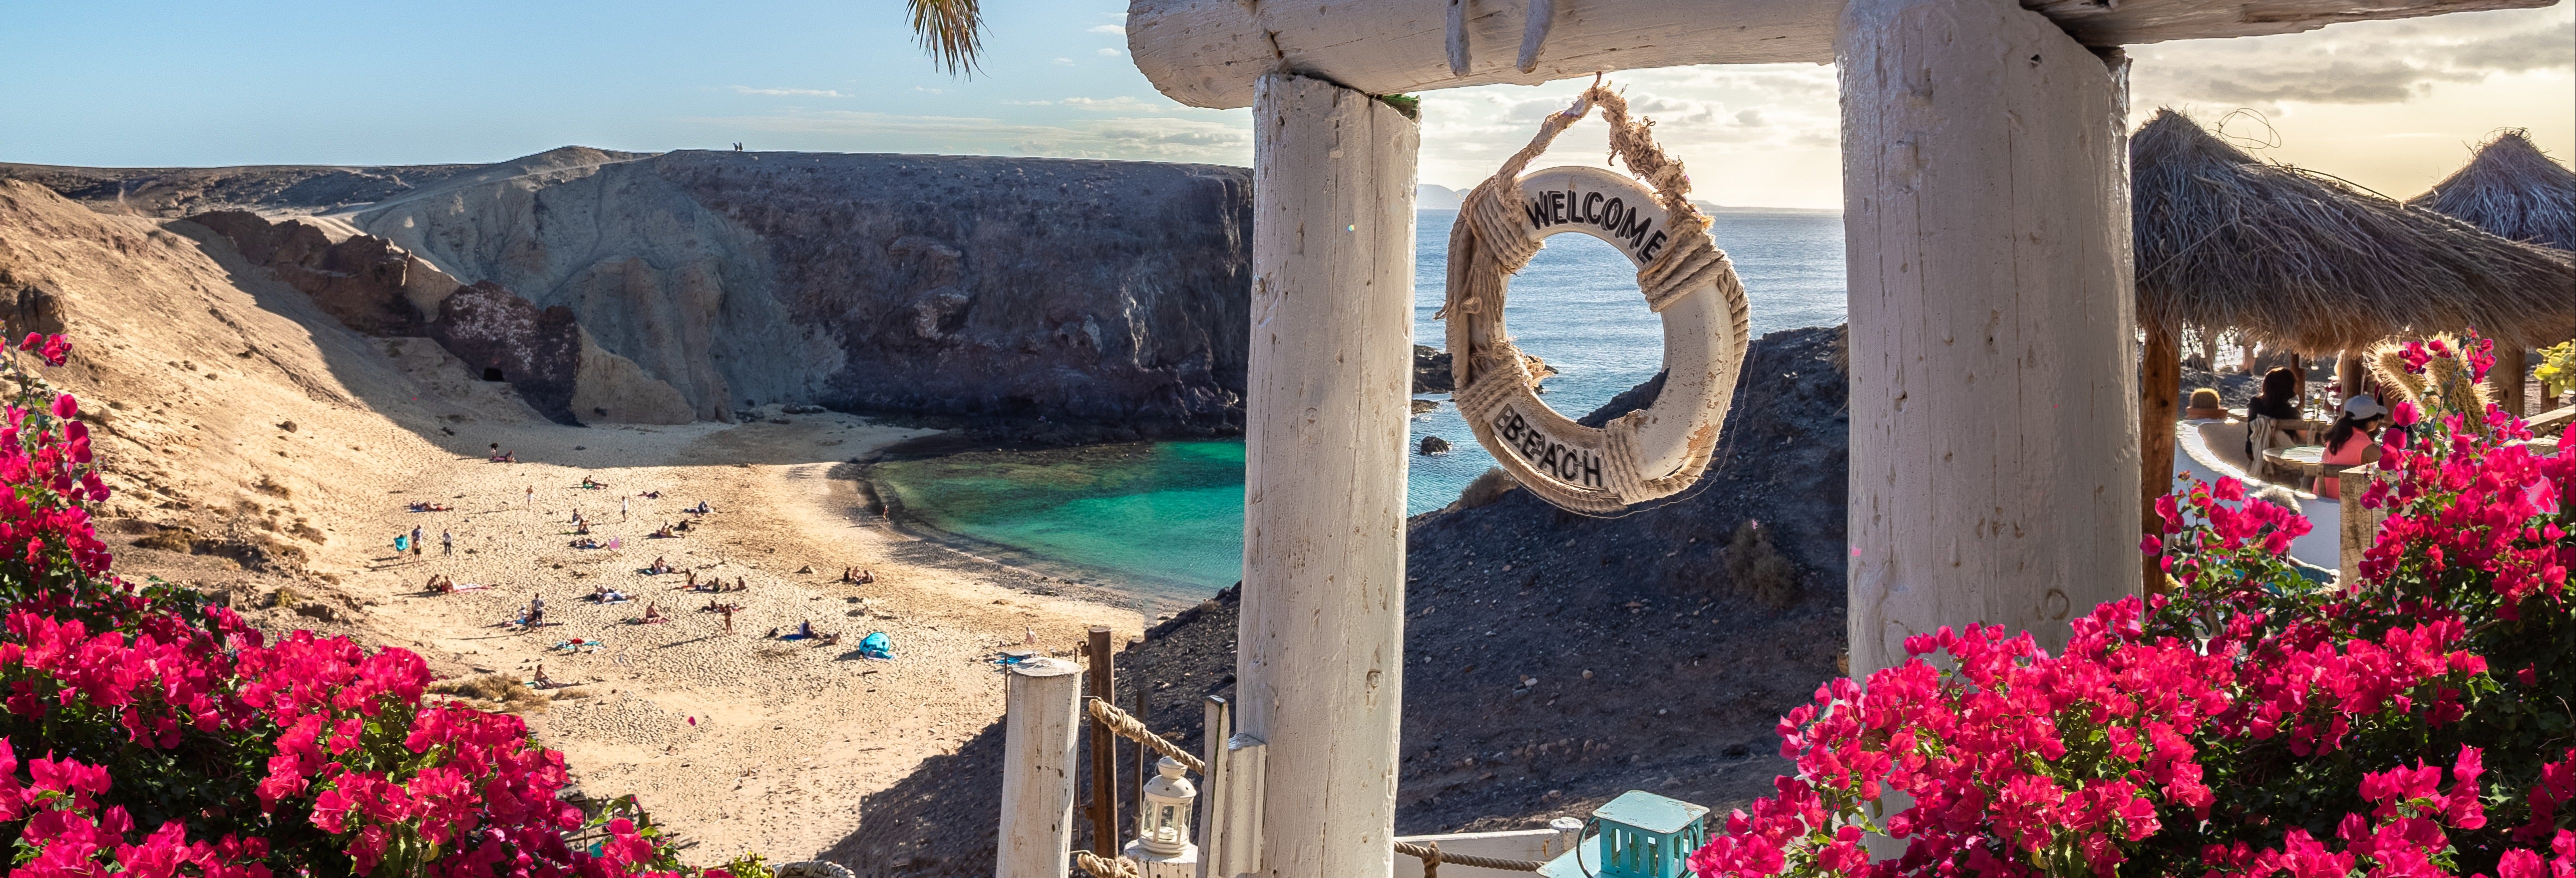 Excursión privada por Lanzarote ¡Tú eliges!